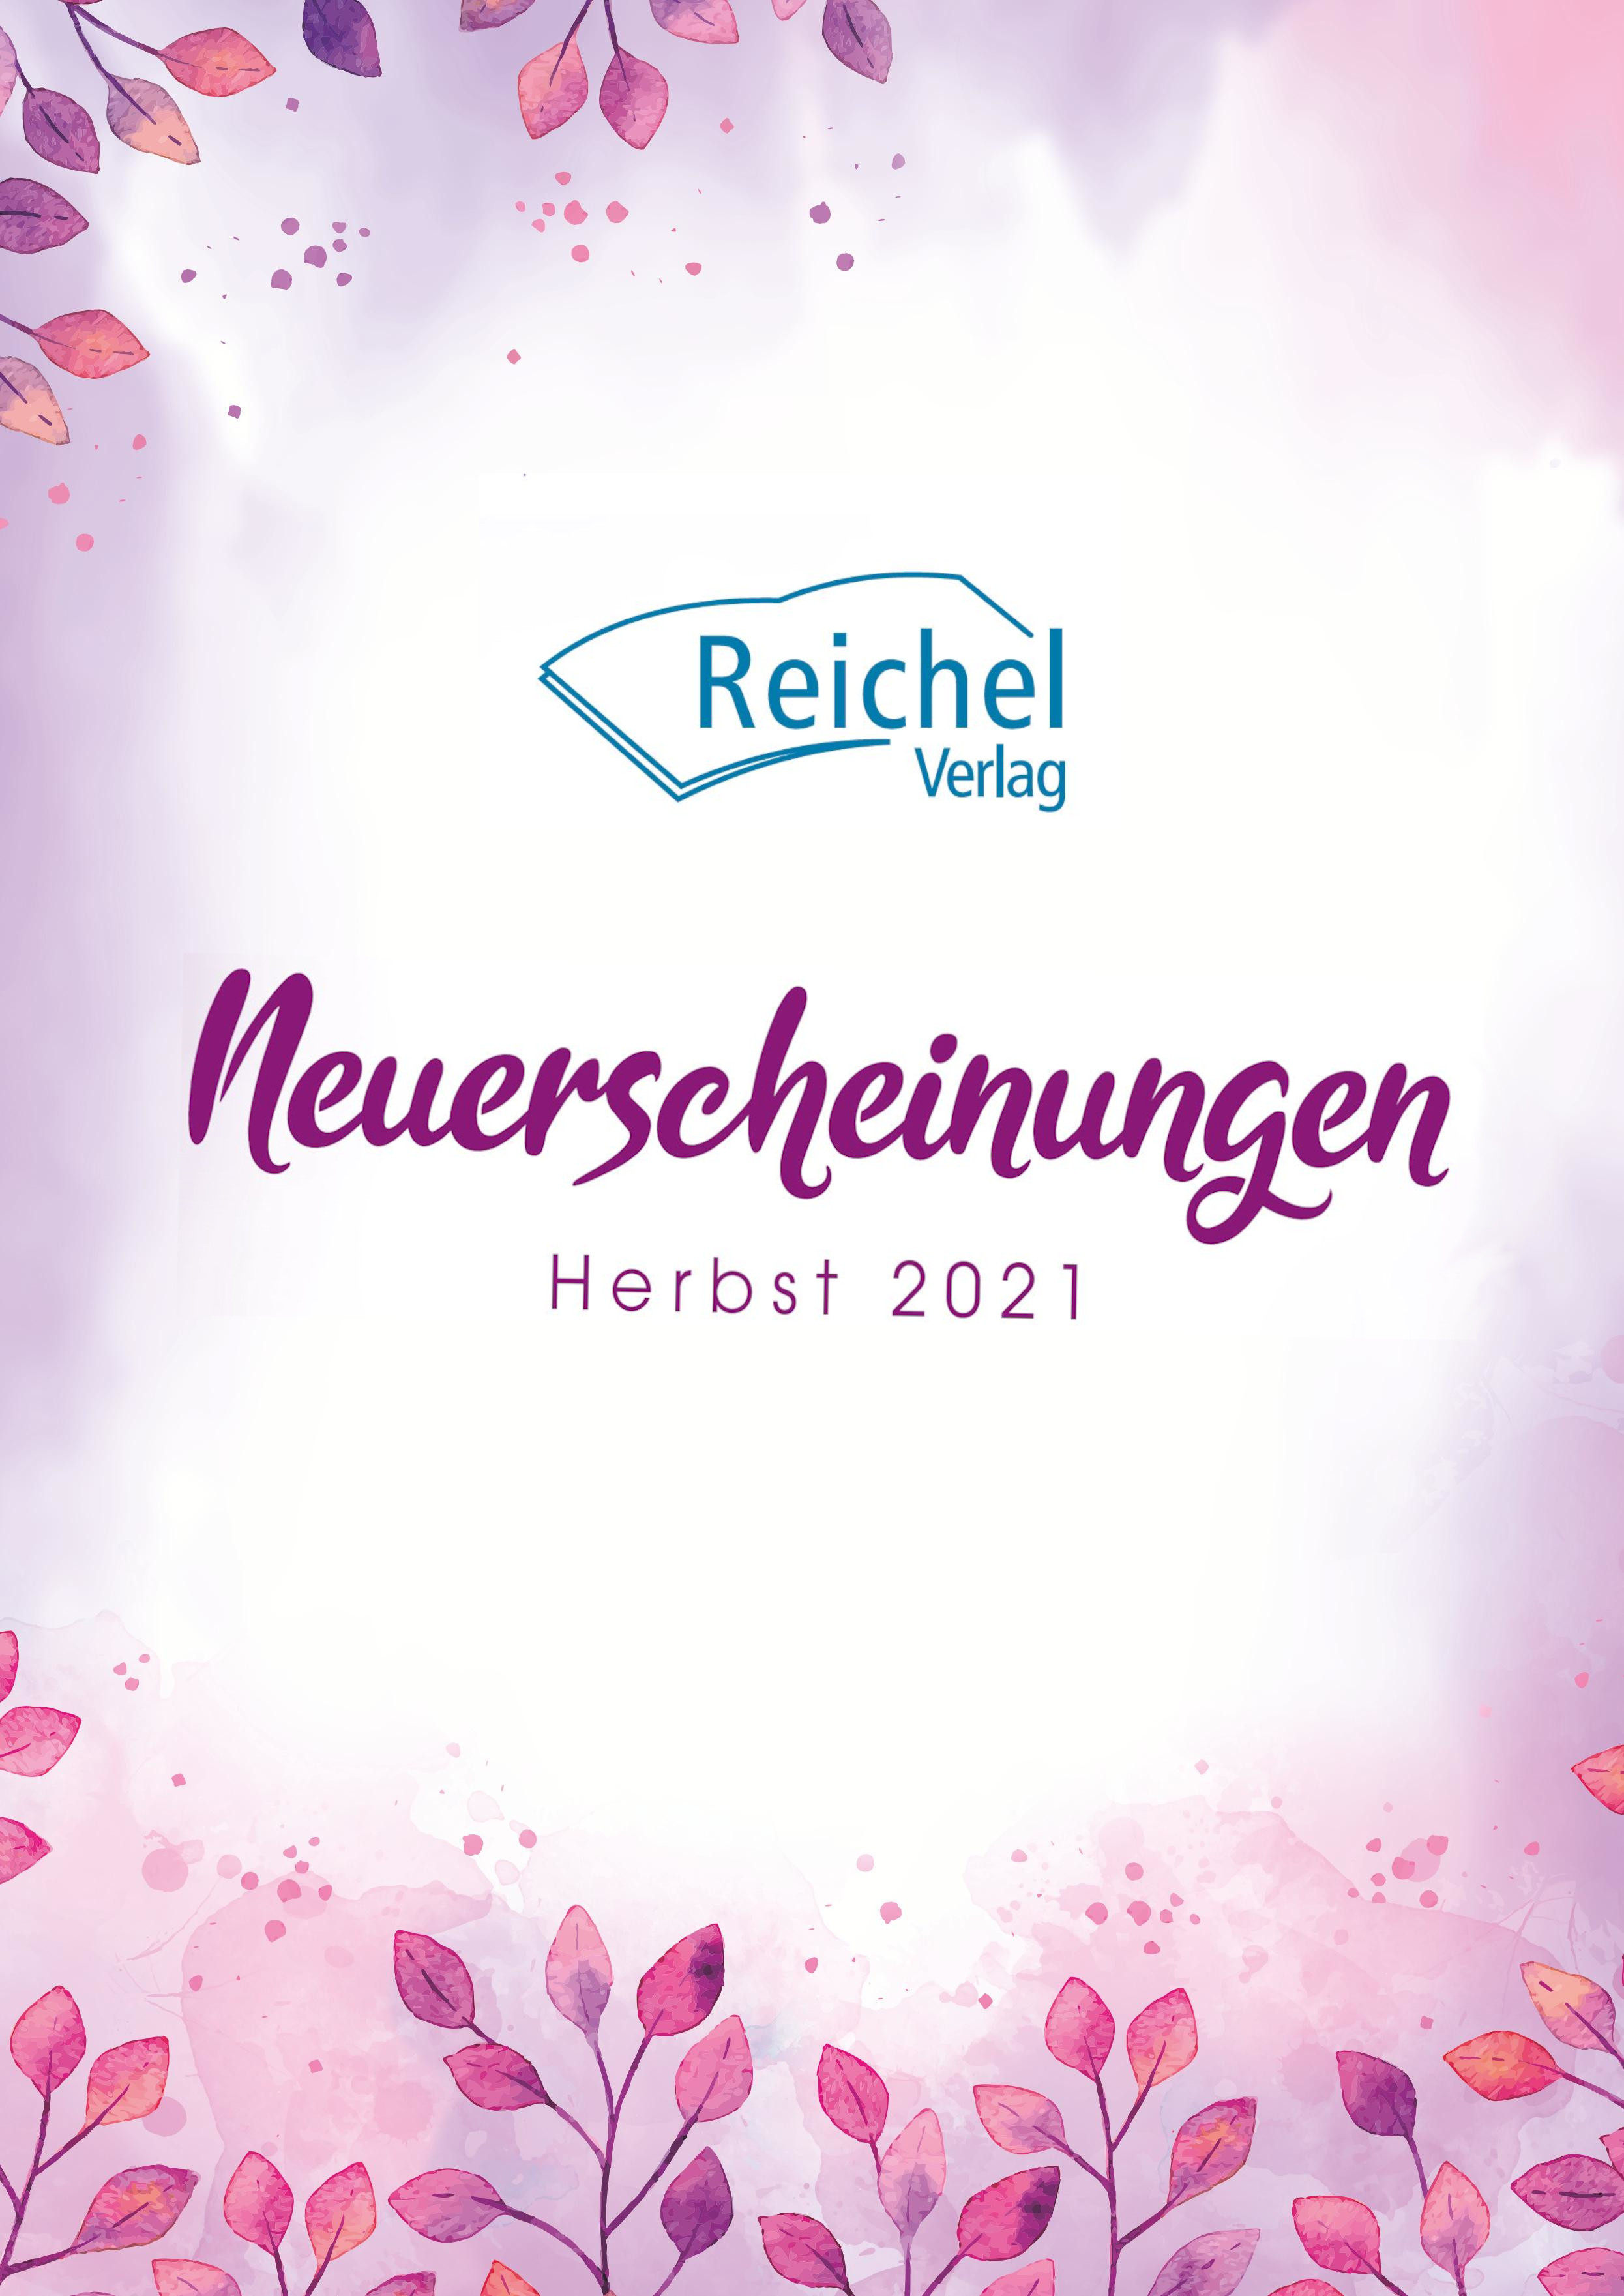 Vorschau des Reichel Verlags für Herbst 2021